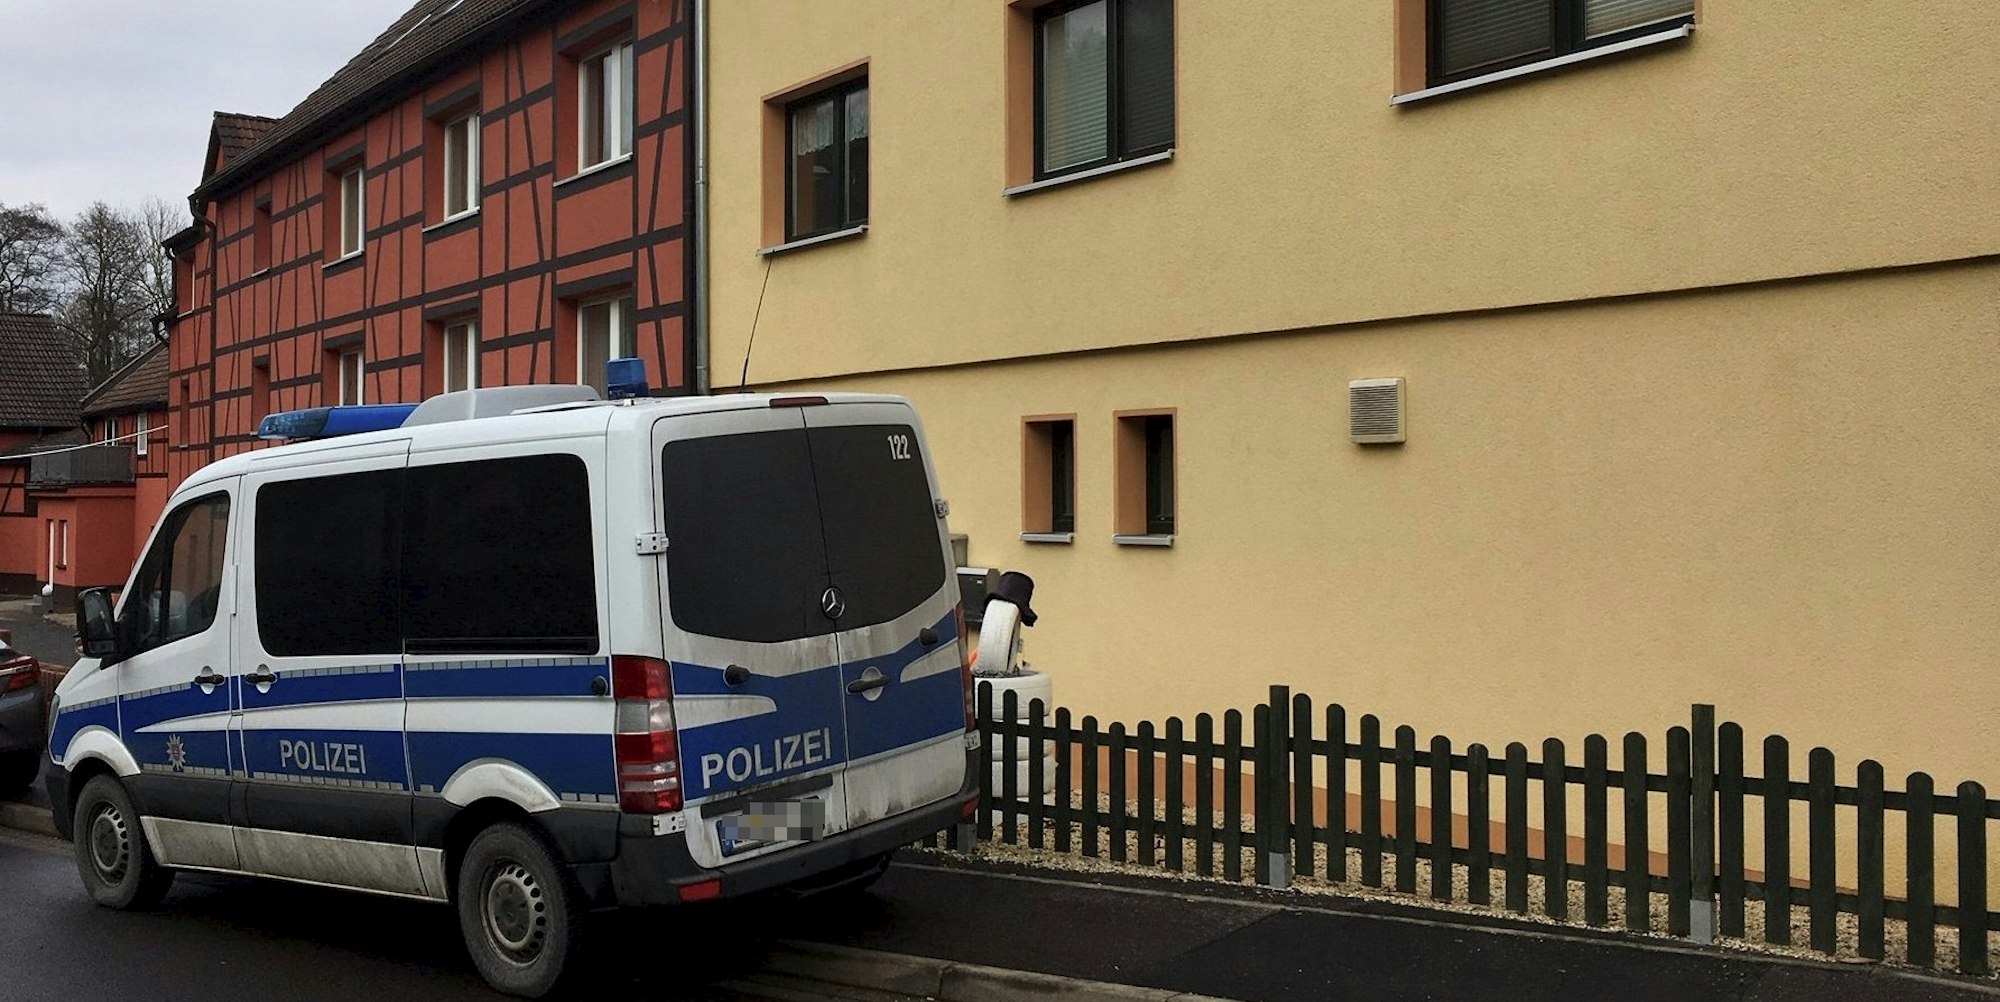 Polizei_Haus (1)